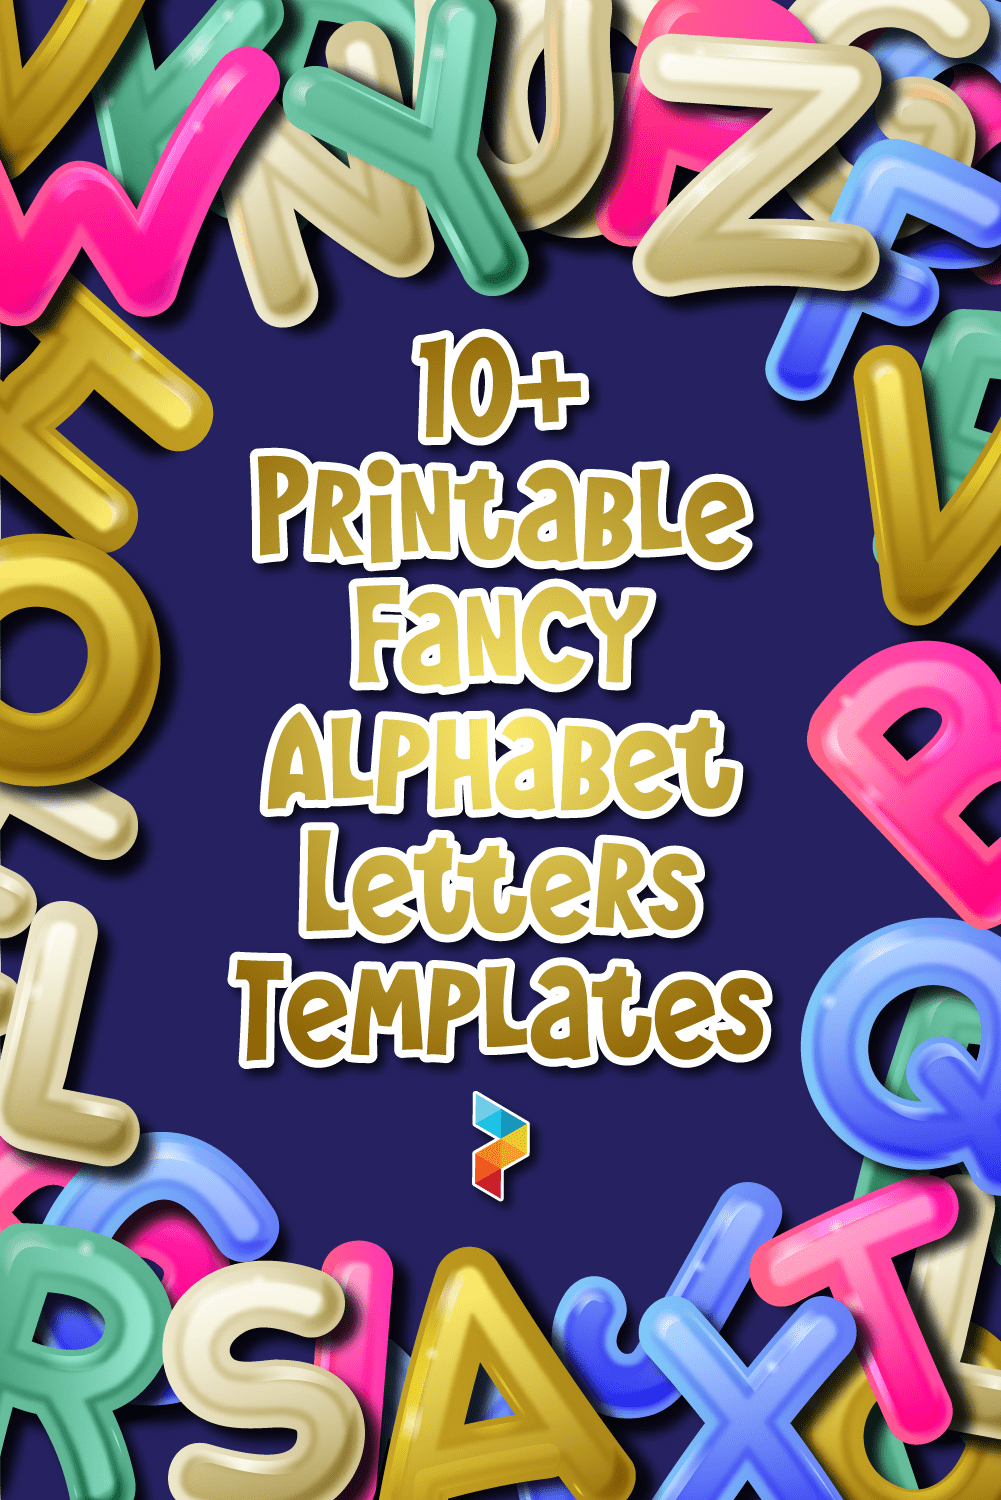 Fancy Alphabet Letters Templates